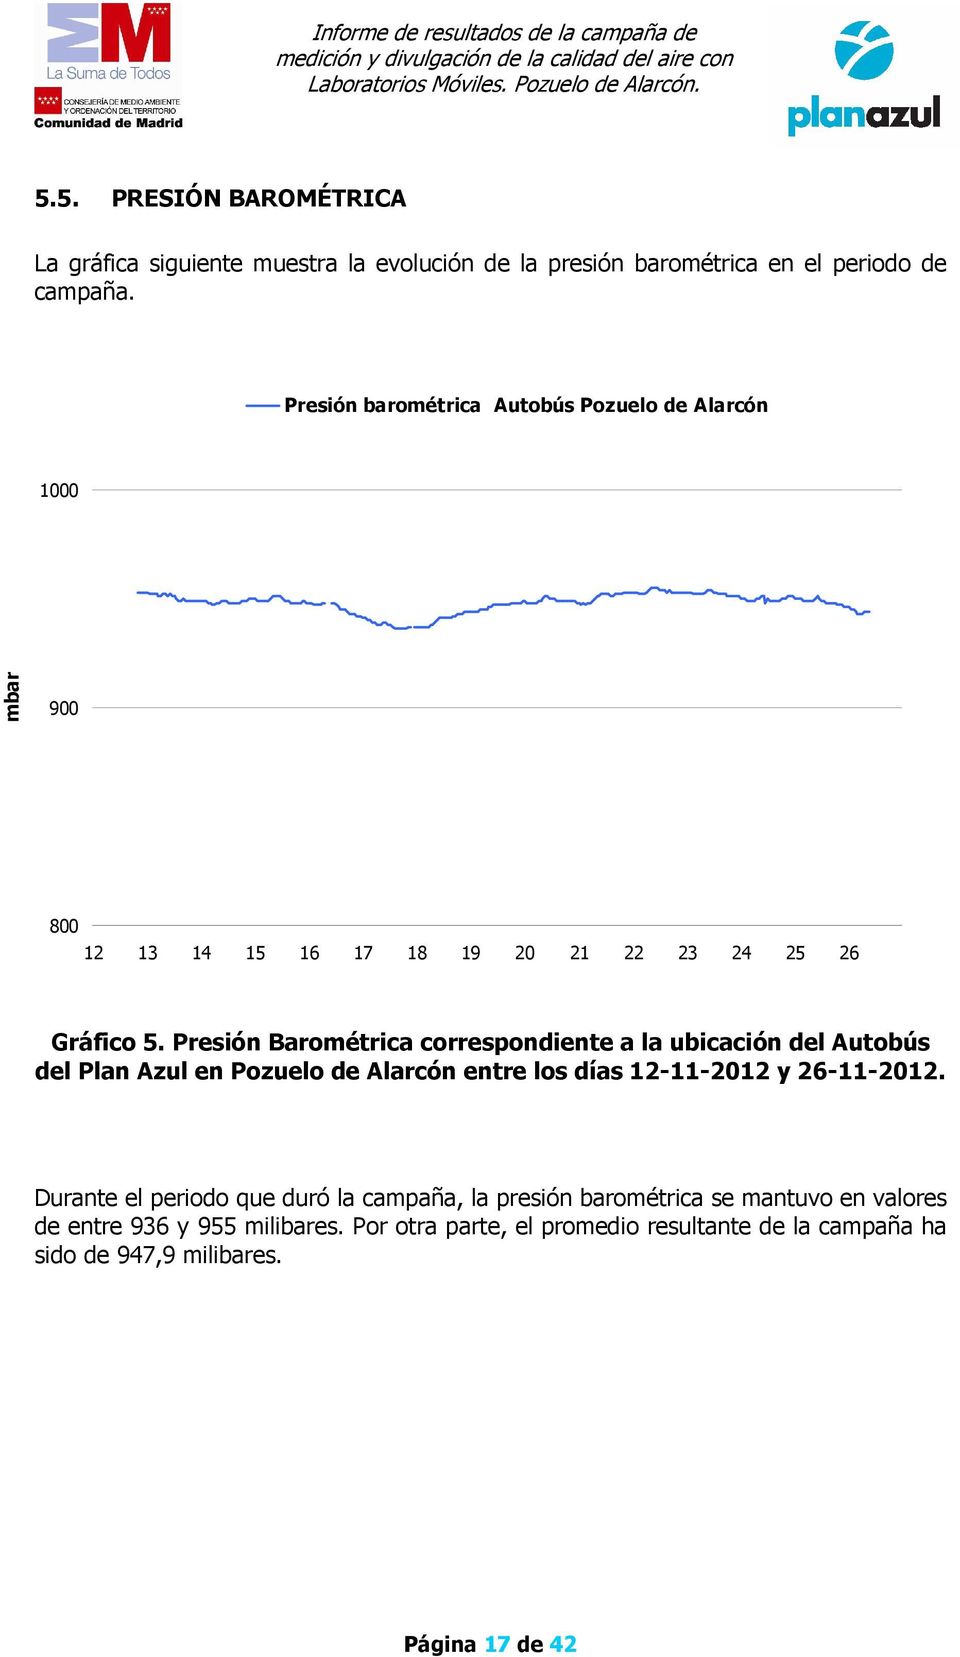 Presión Barométrica correspondiente a la ubicación del Autobús del Plan Azul en Pozuelo de Alarcón entre los días 12-11-2012 y 26-11-2012.